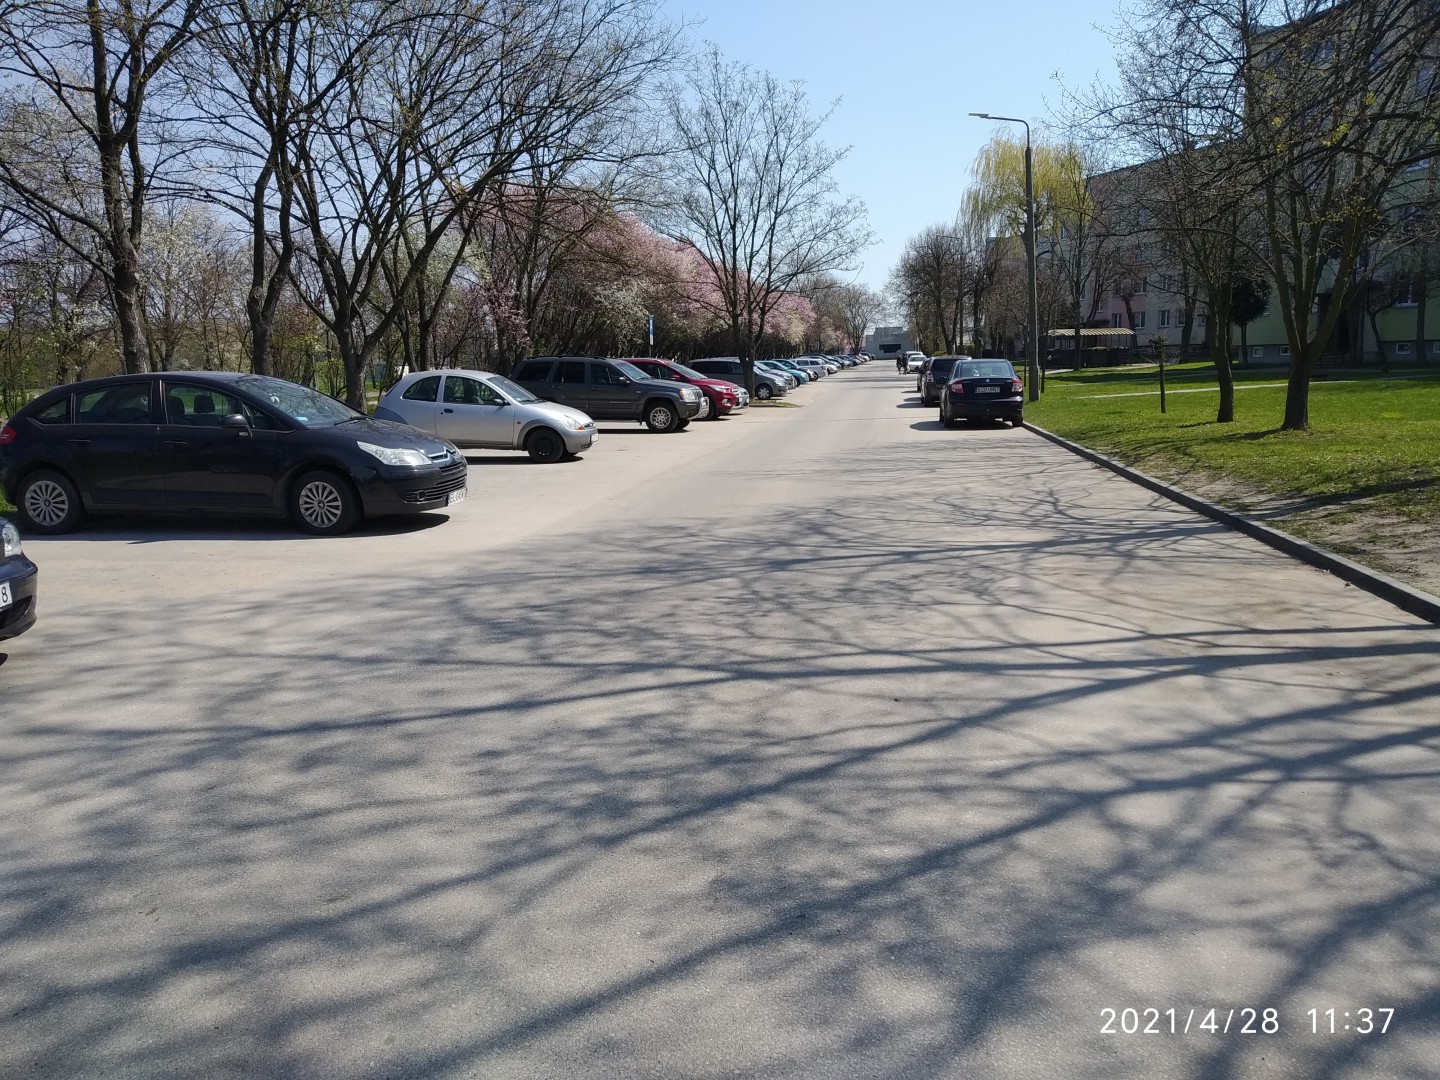 Na zdjęciu widać osiedlową uliczkę, drzewa, parkujące samochody i bloki